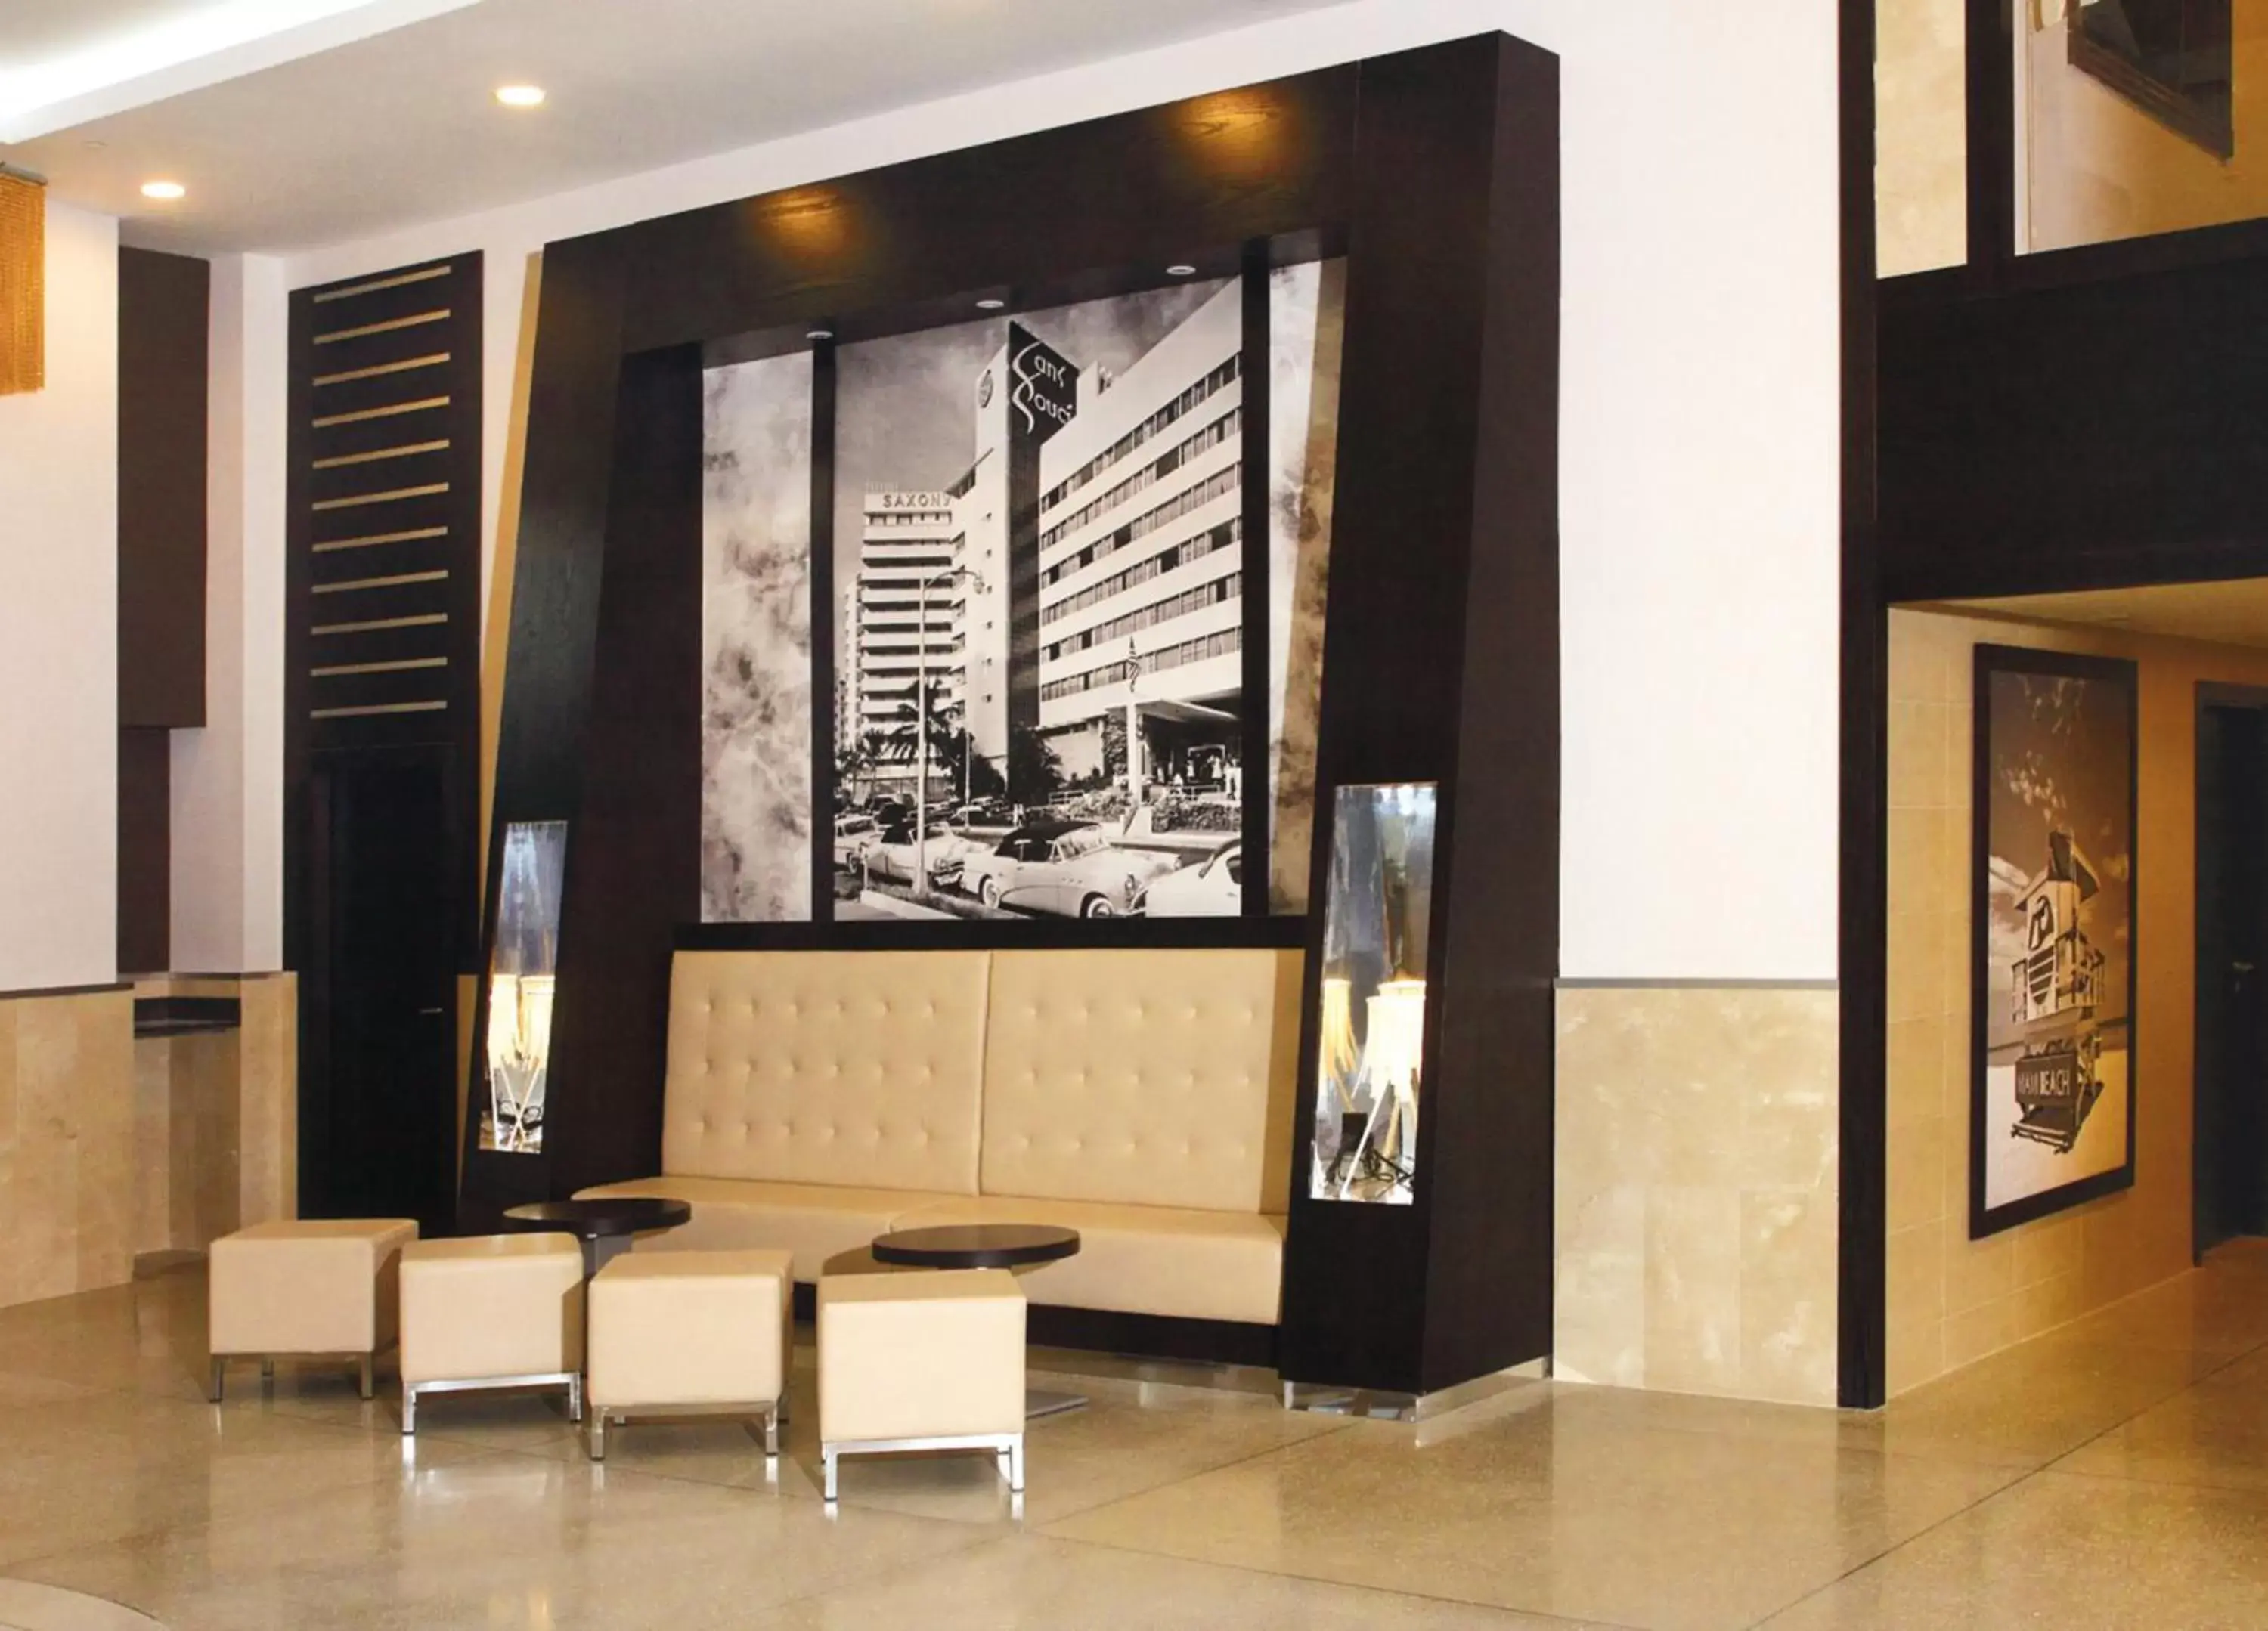 Lobby or reception in Riu Plaza Miami Beach